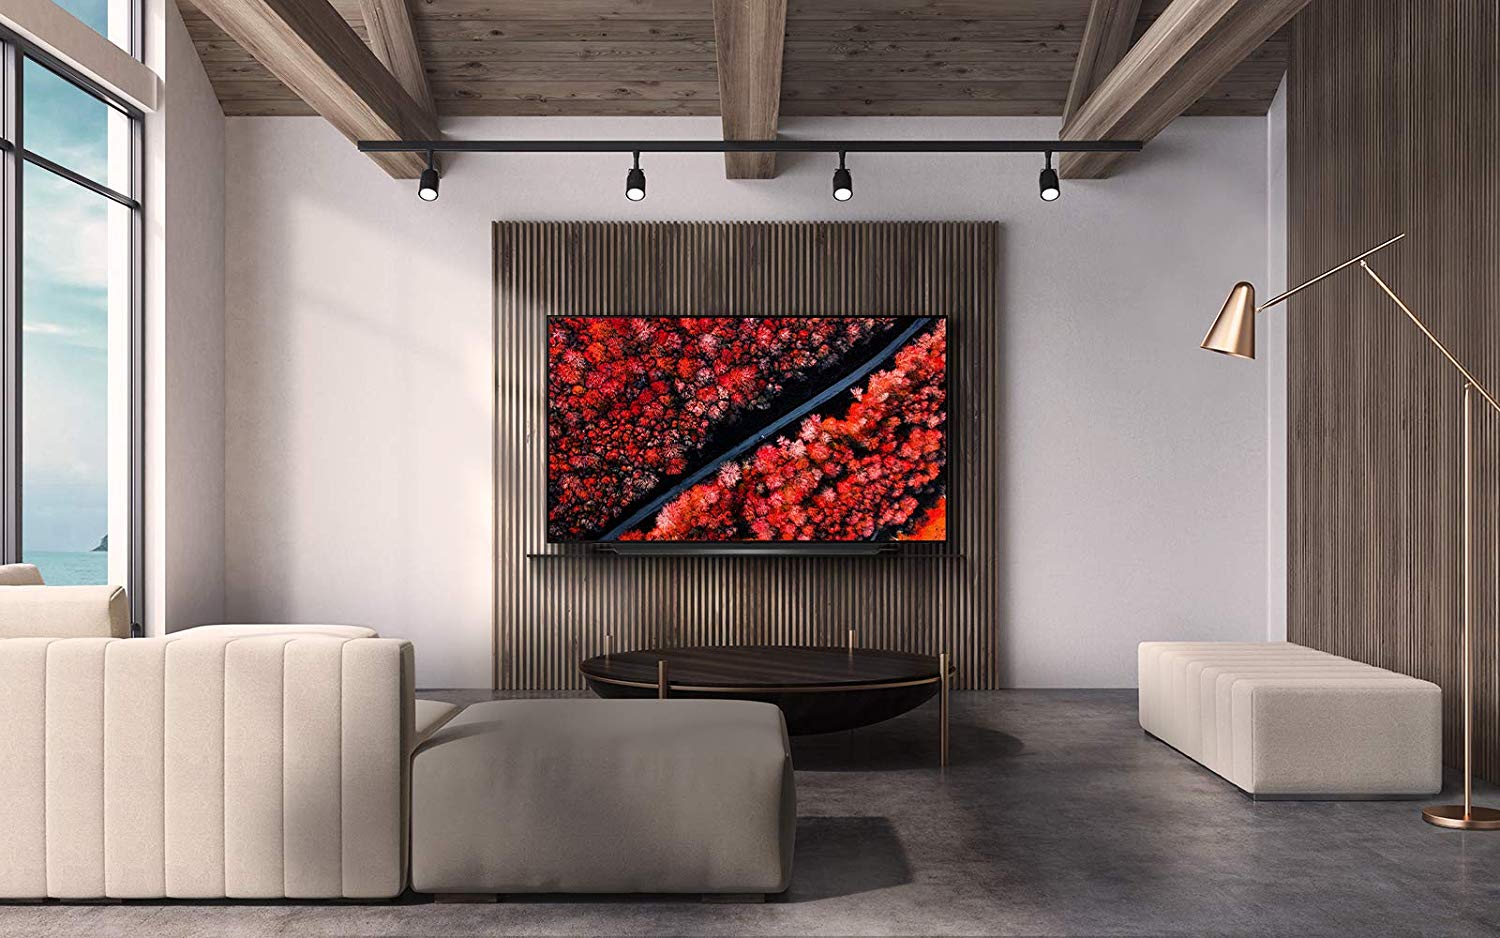 Photo of Date prisa y compra este televisor LG OLED de 65 pulgadas con $700 de descuento